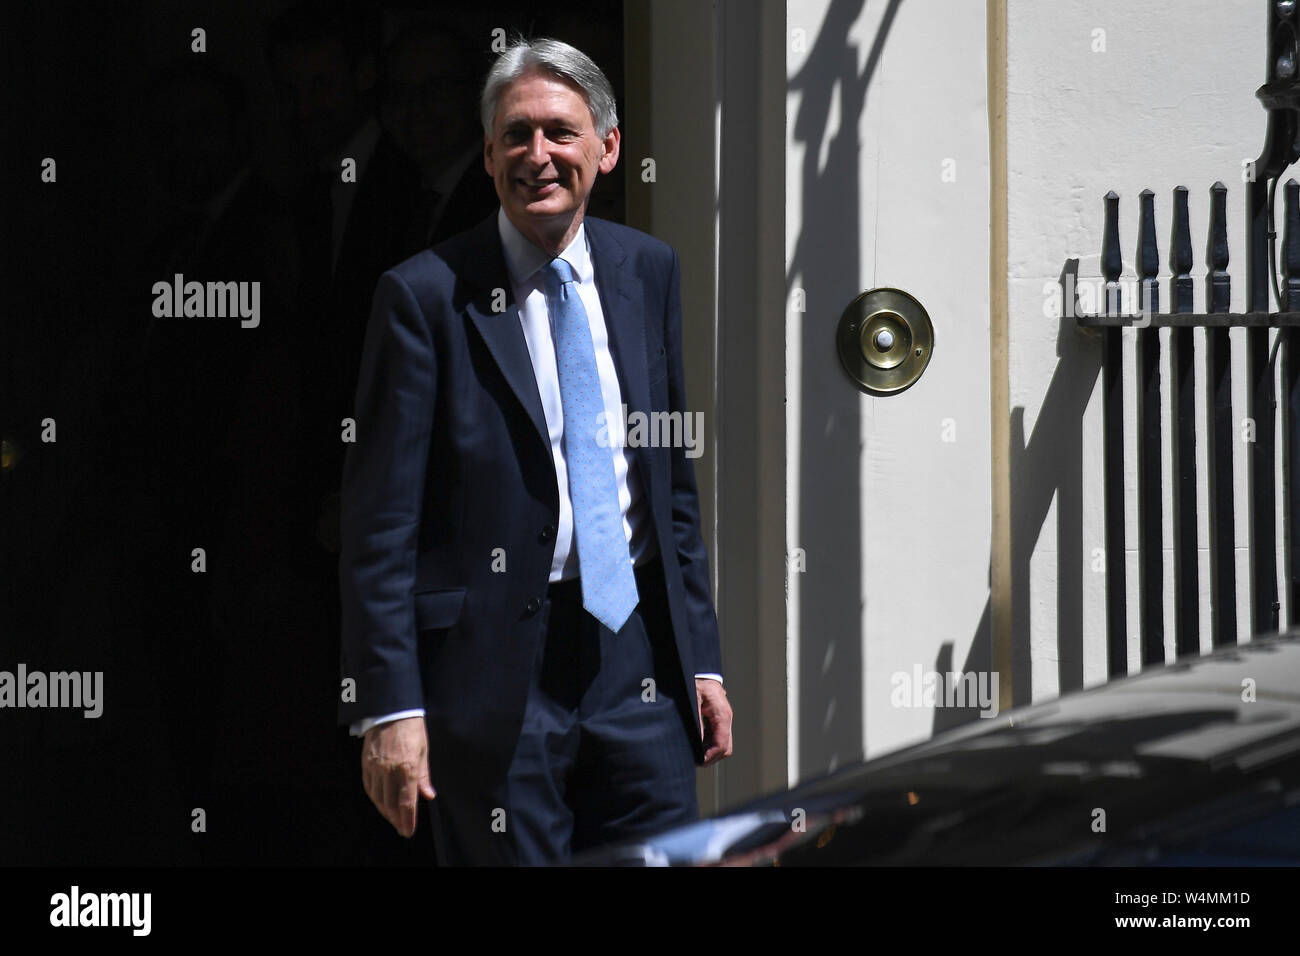 (190724) - LONDRES, 24 de julio de 2019 (Xinhua) -- El ministro de Hacienda británico Philip Hammond deja 11 de Downing Street en Londres, Gran Bretaña el 24 de julio de 2019. (Foto por Alberto Pezzali/Xinhua) Foto de stock